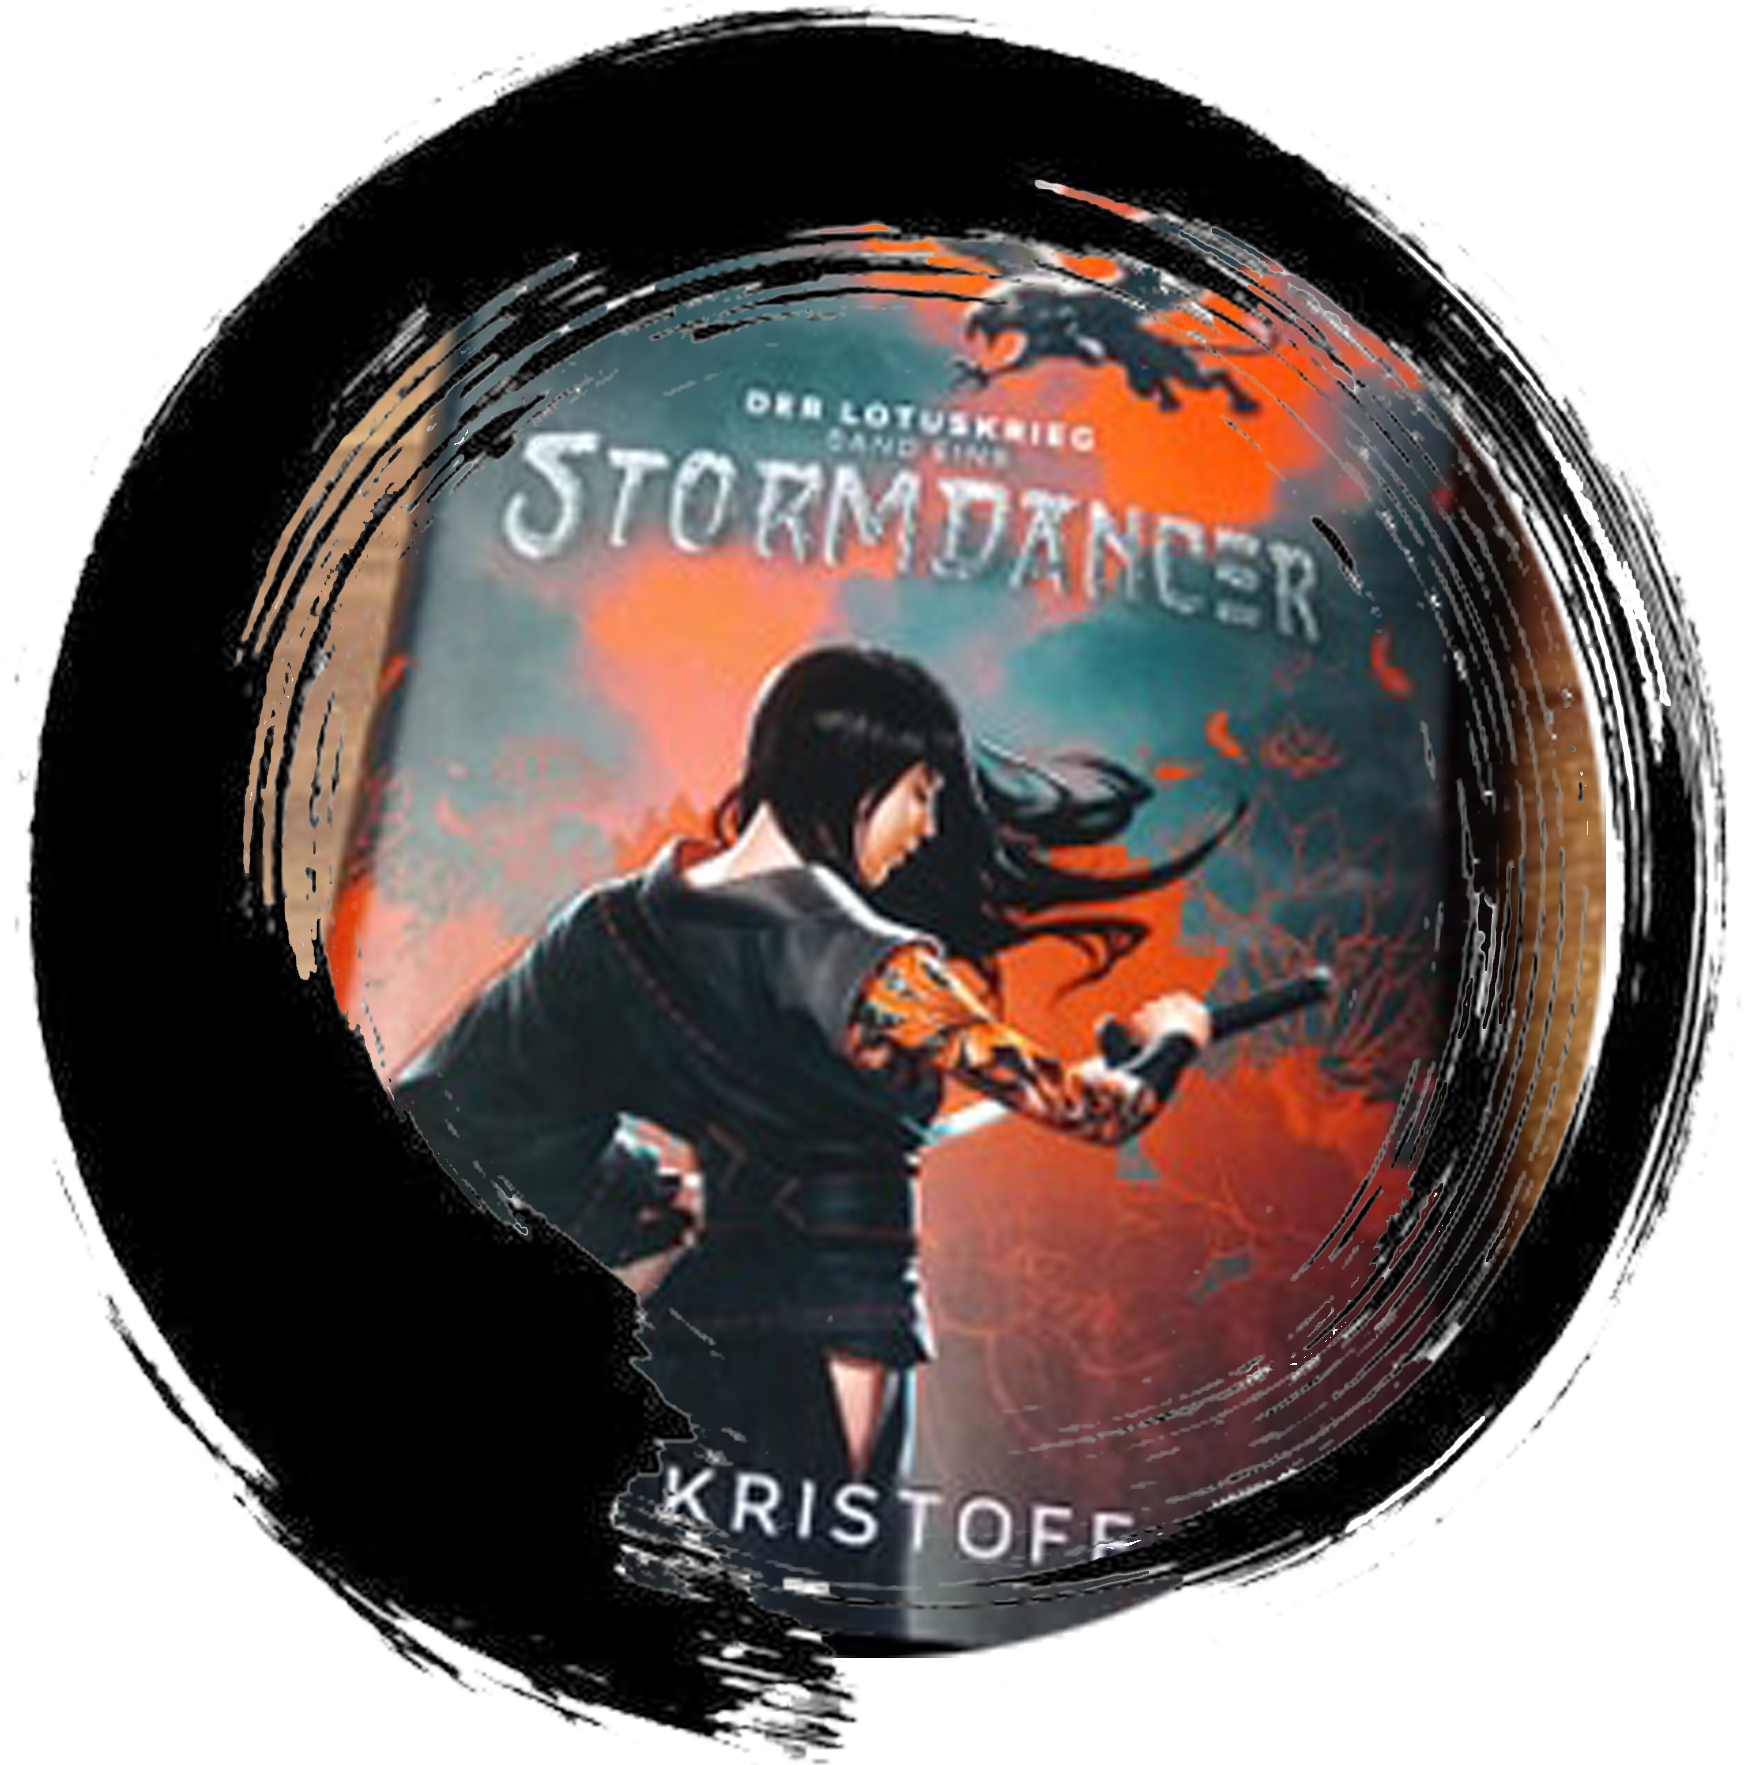 Lotuskriege #1 – Stormdancer